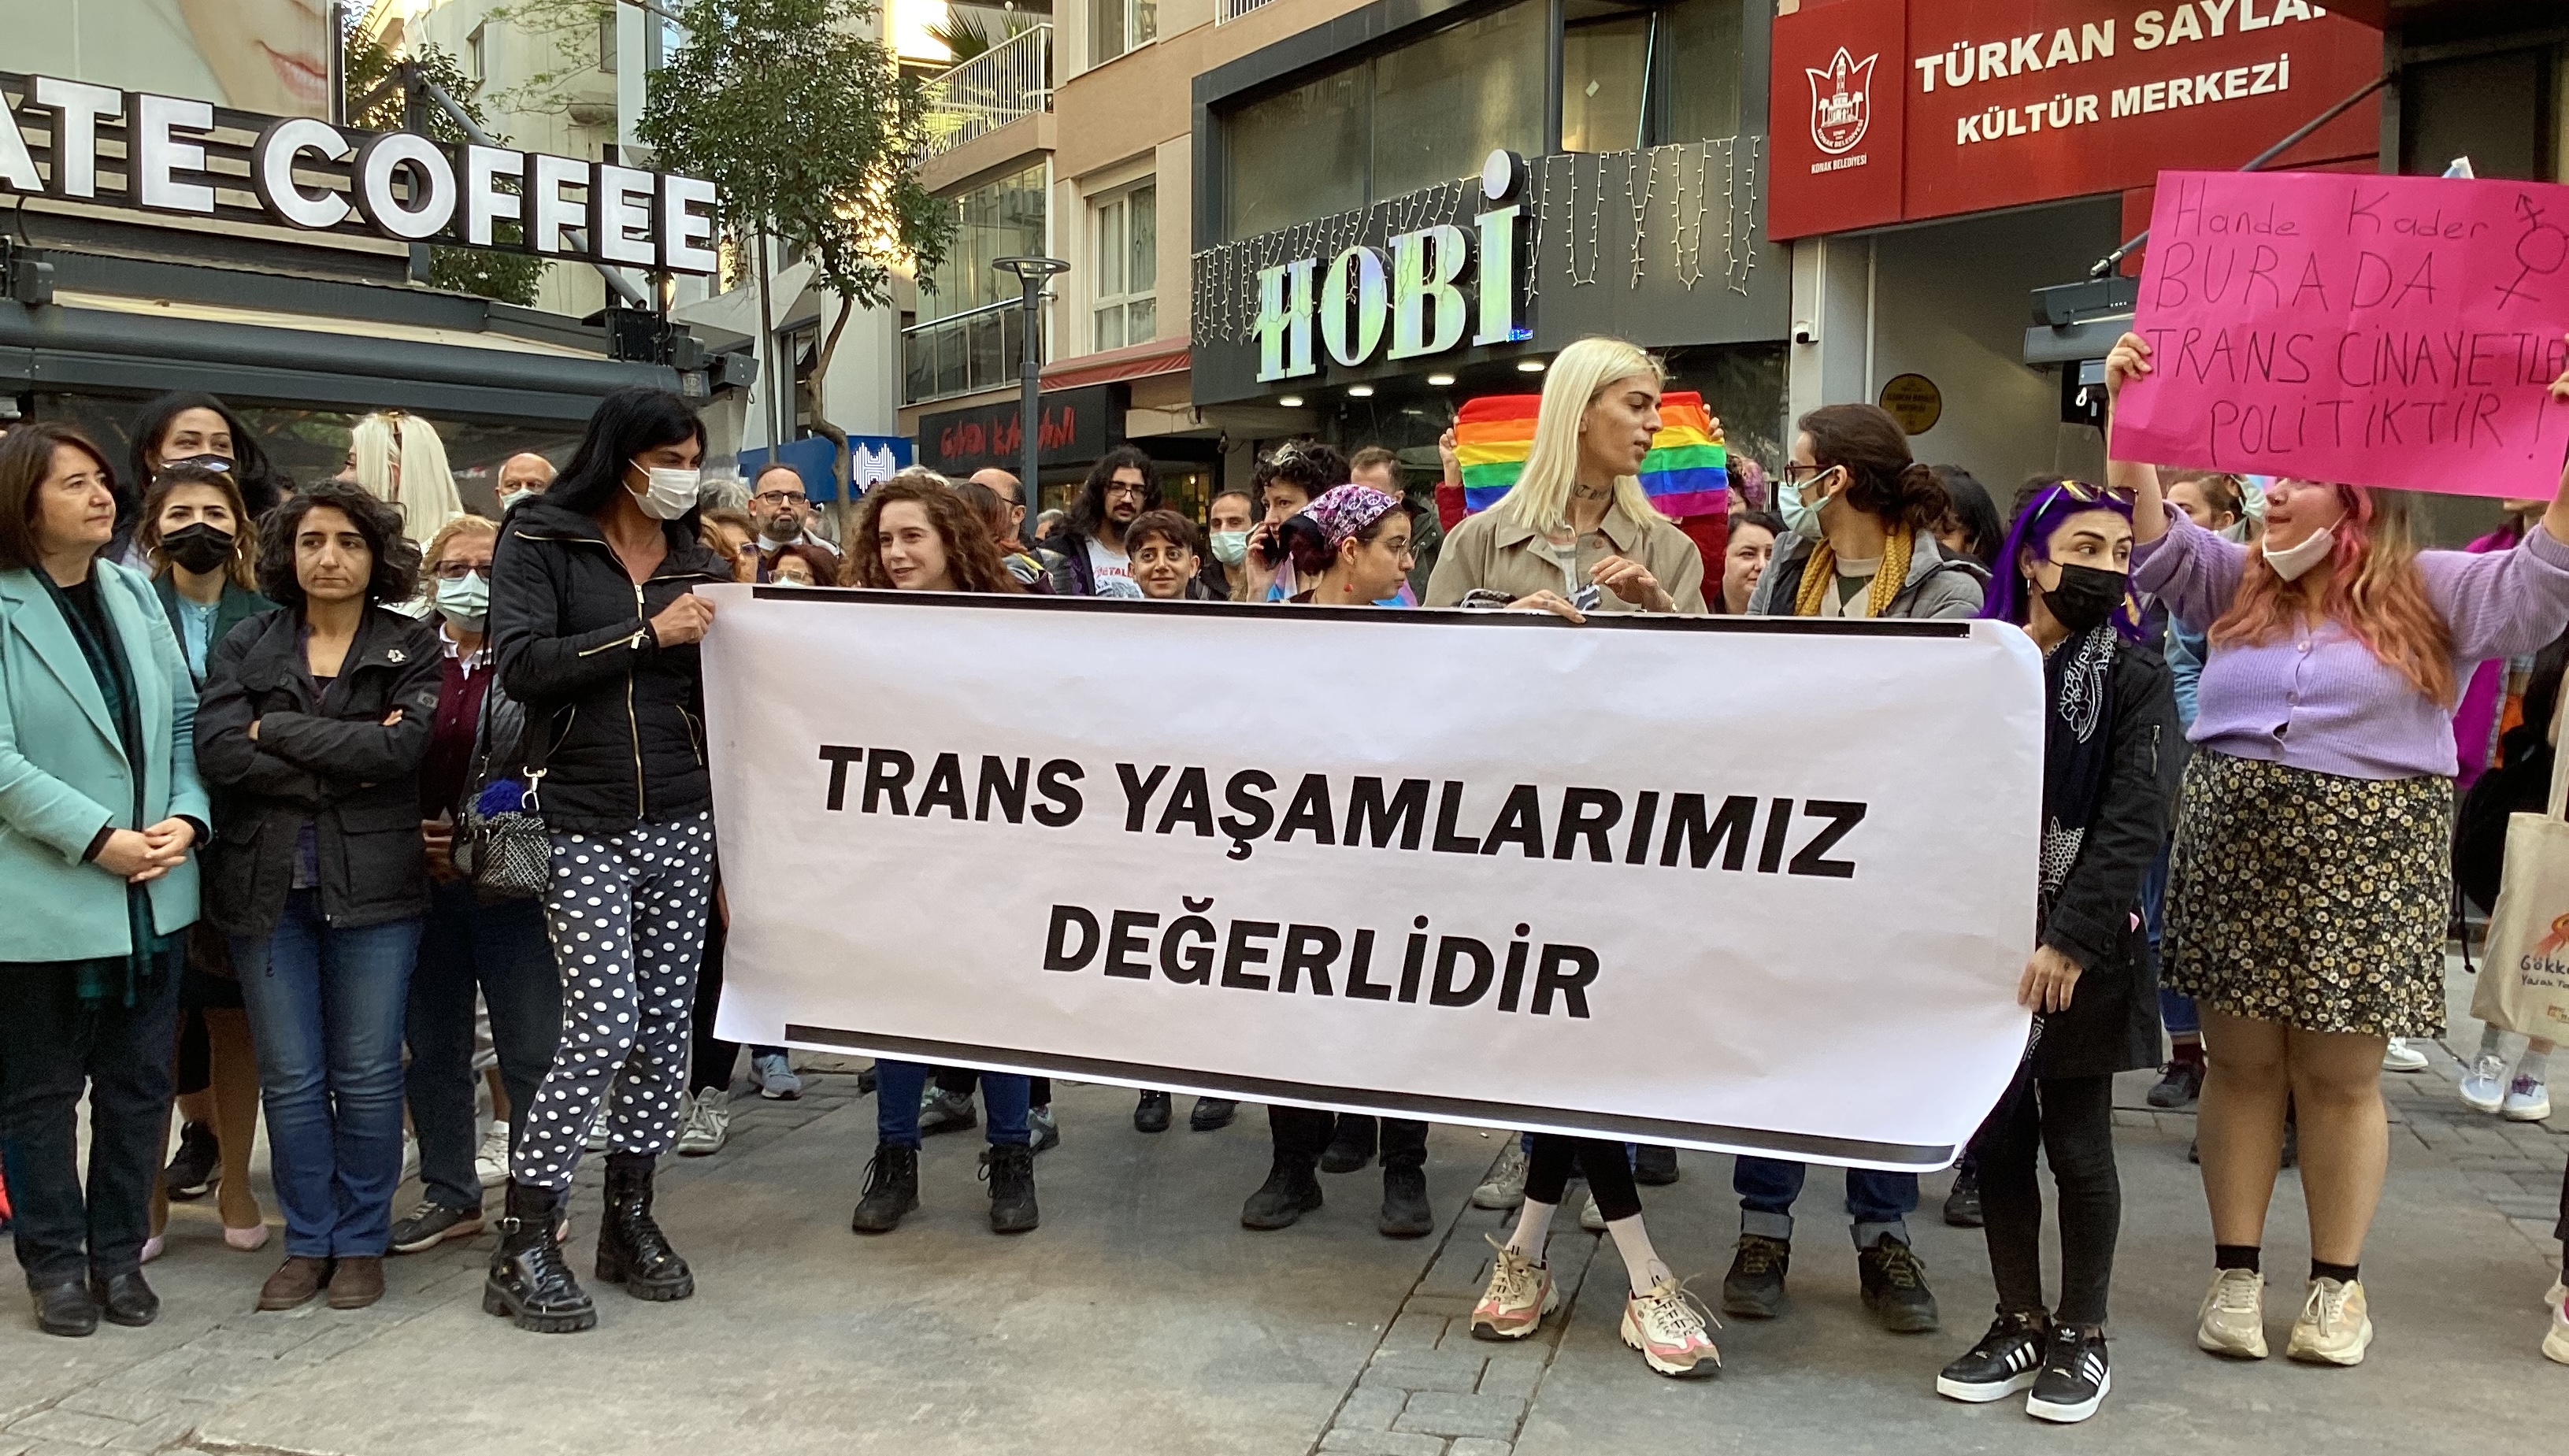 İzmir’de polis ve bekçi el ele trans kadınlara işkence yapıyor! | Kaos GL - LGBTİ+ Haber Portalı Haber